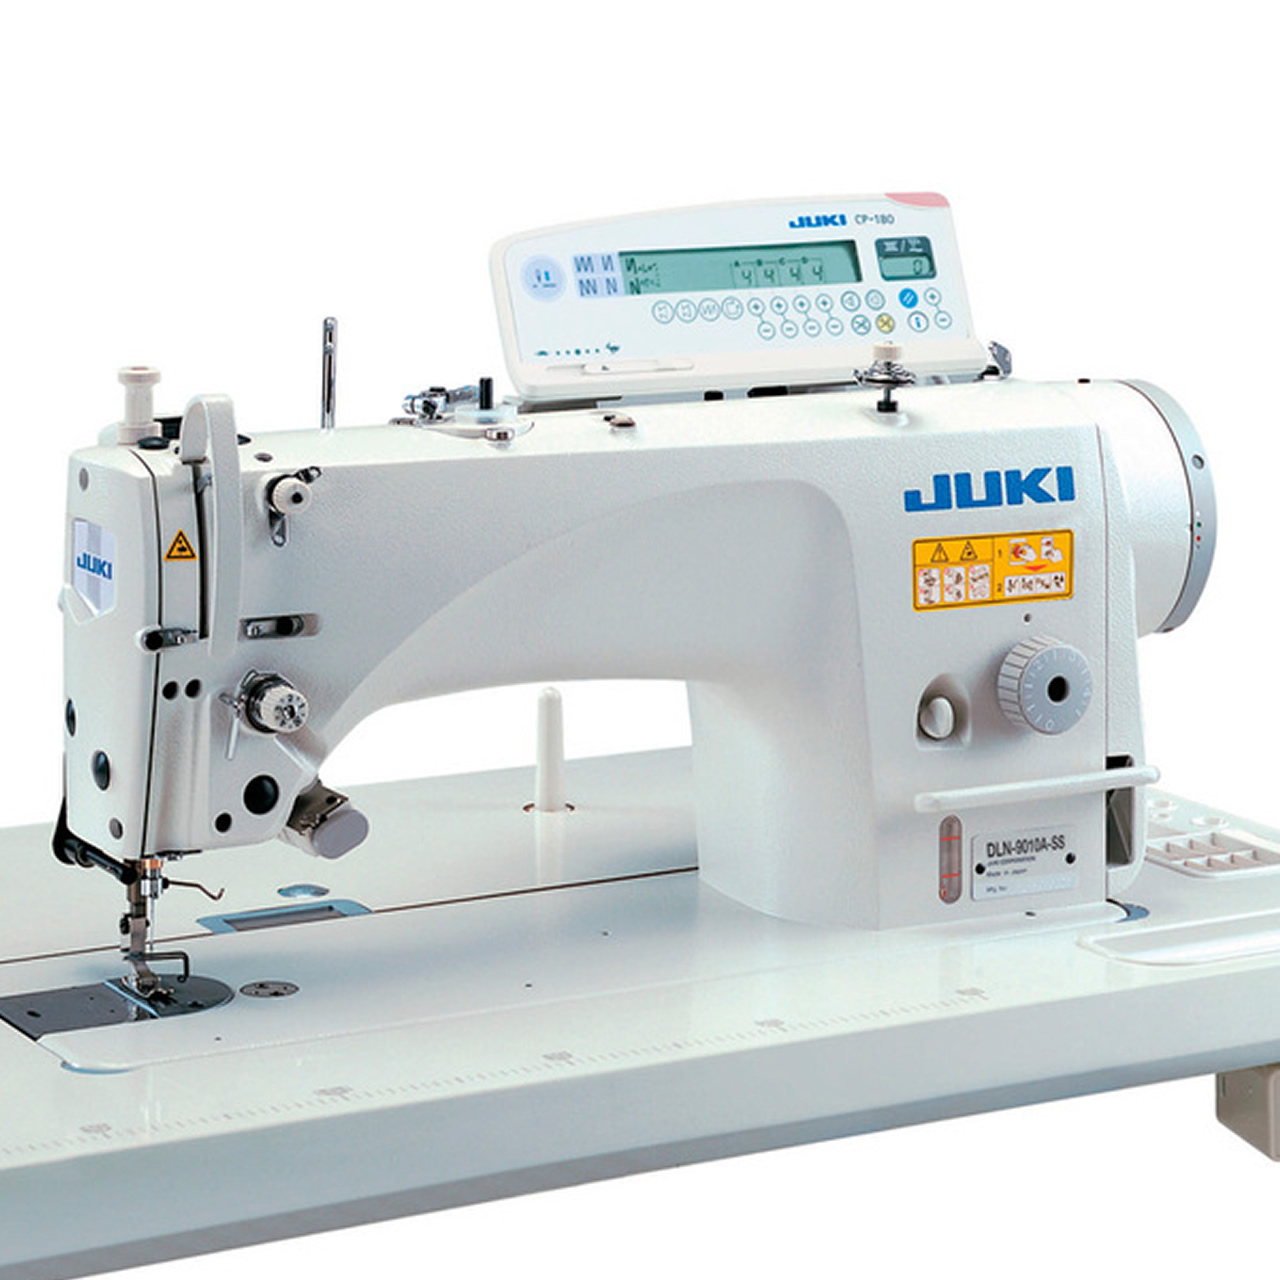 Buy JUKI DLN-5410N-7 Needle-feed, Lockstitch Industrial Sewing Machine